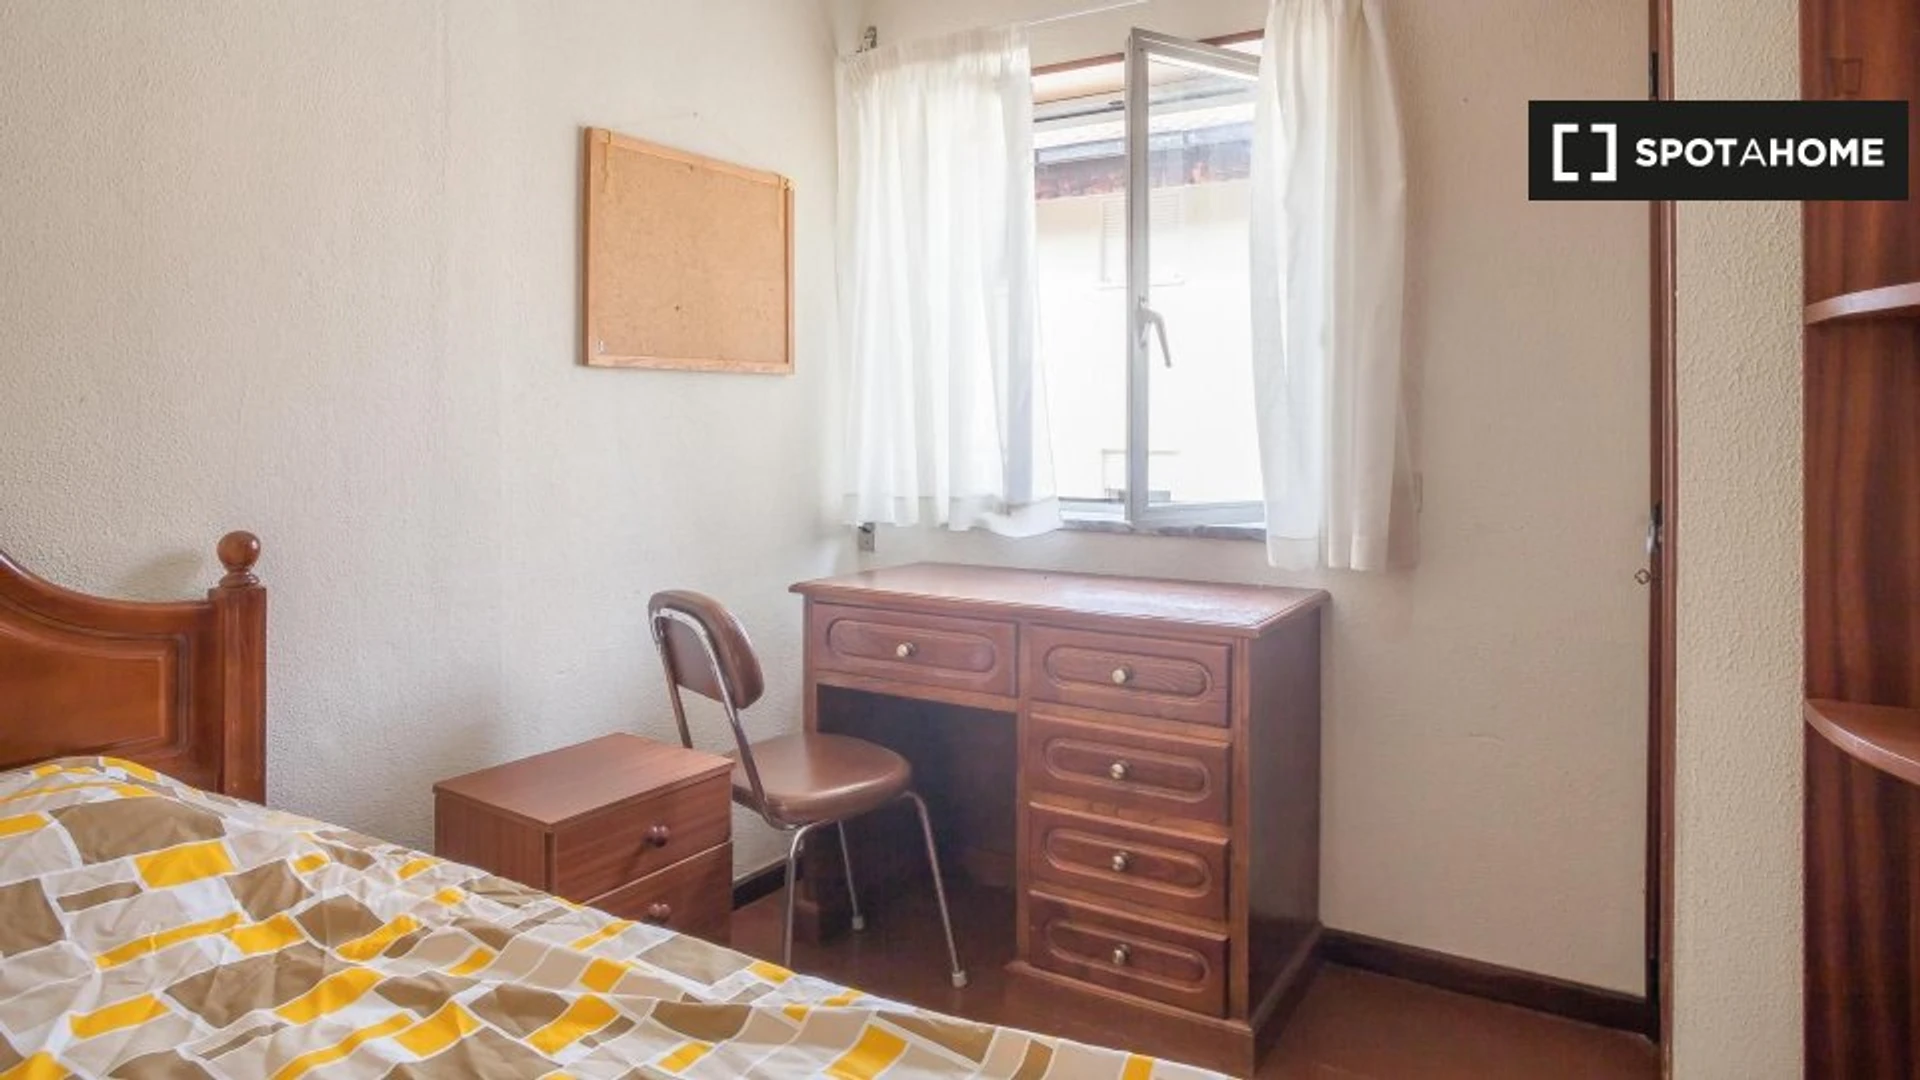 Coimbra de çift kişilik yataklı kiralık oda